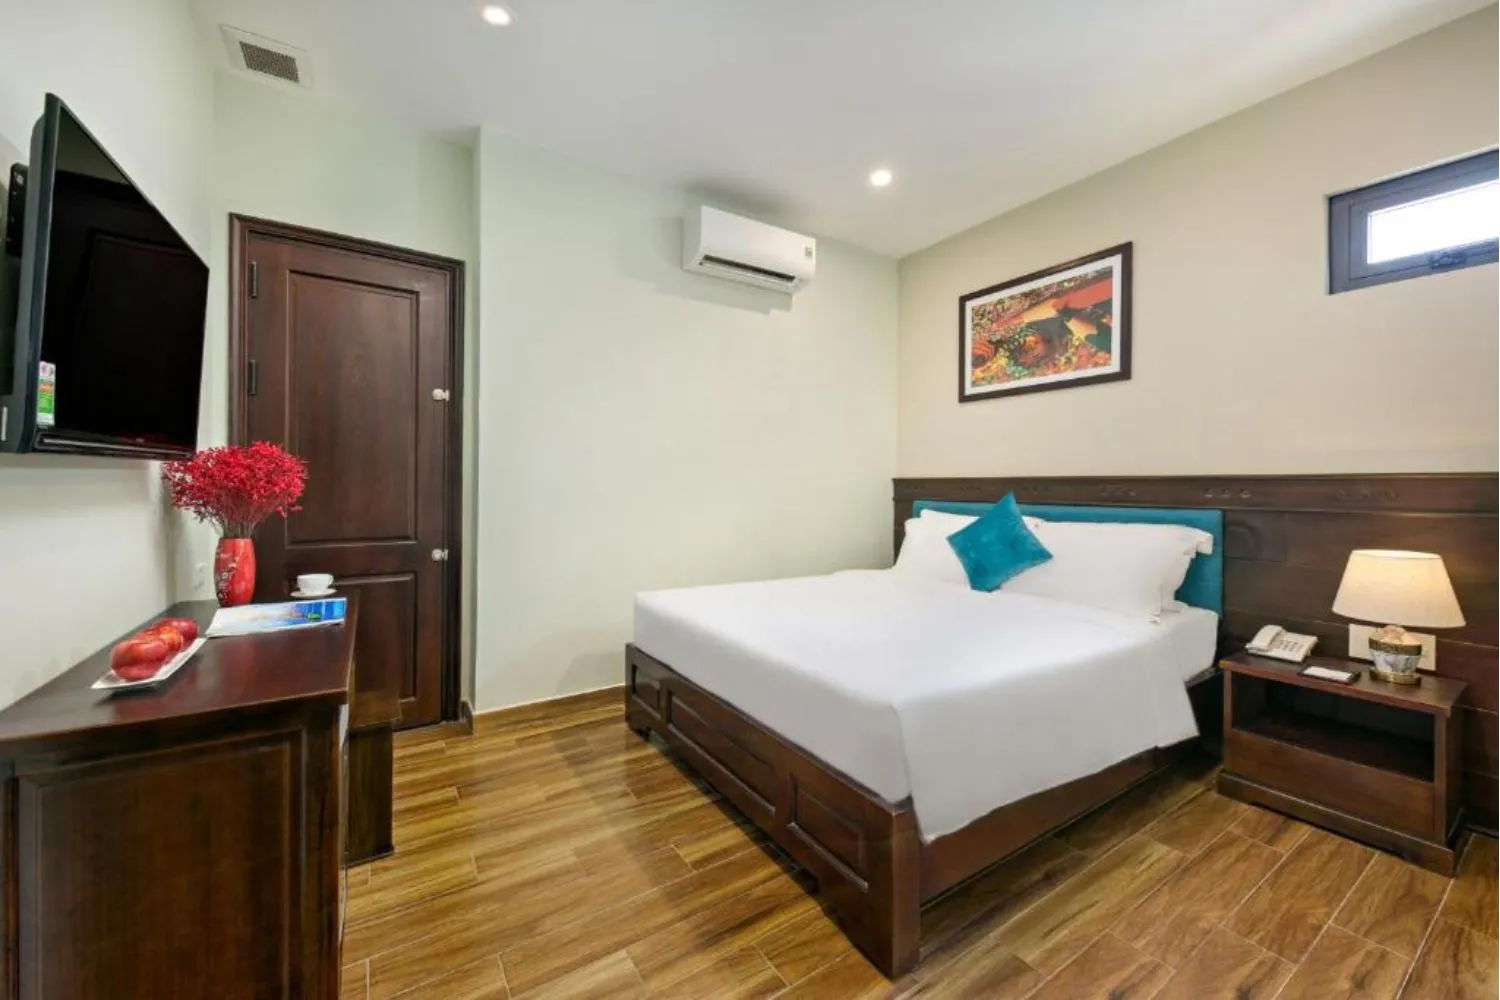 Celina Hotel And Apartment trải nghiệm du lịch biển tại Đà Nẵng